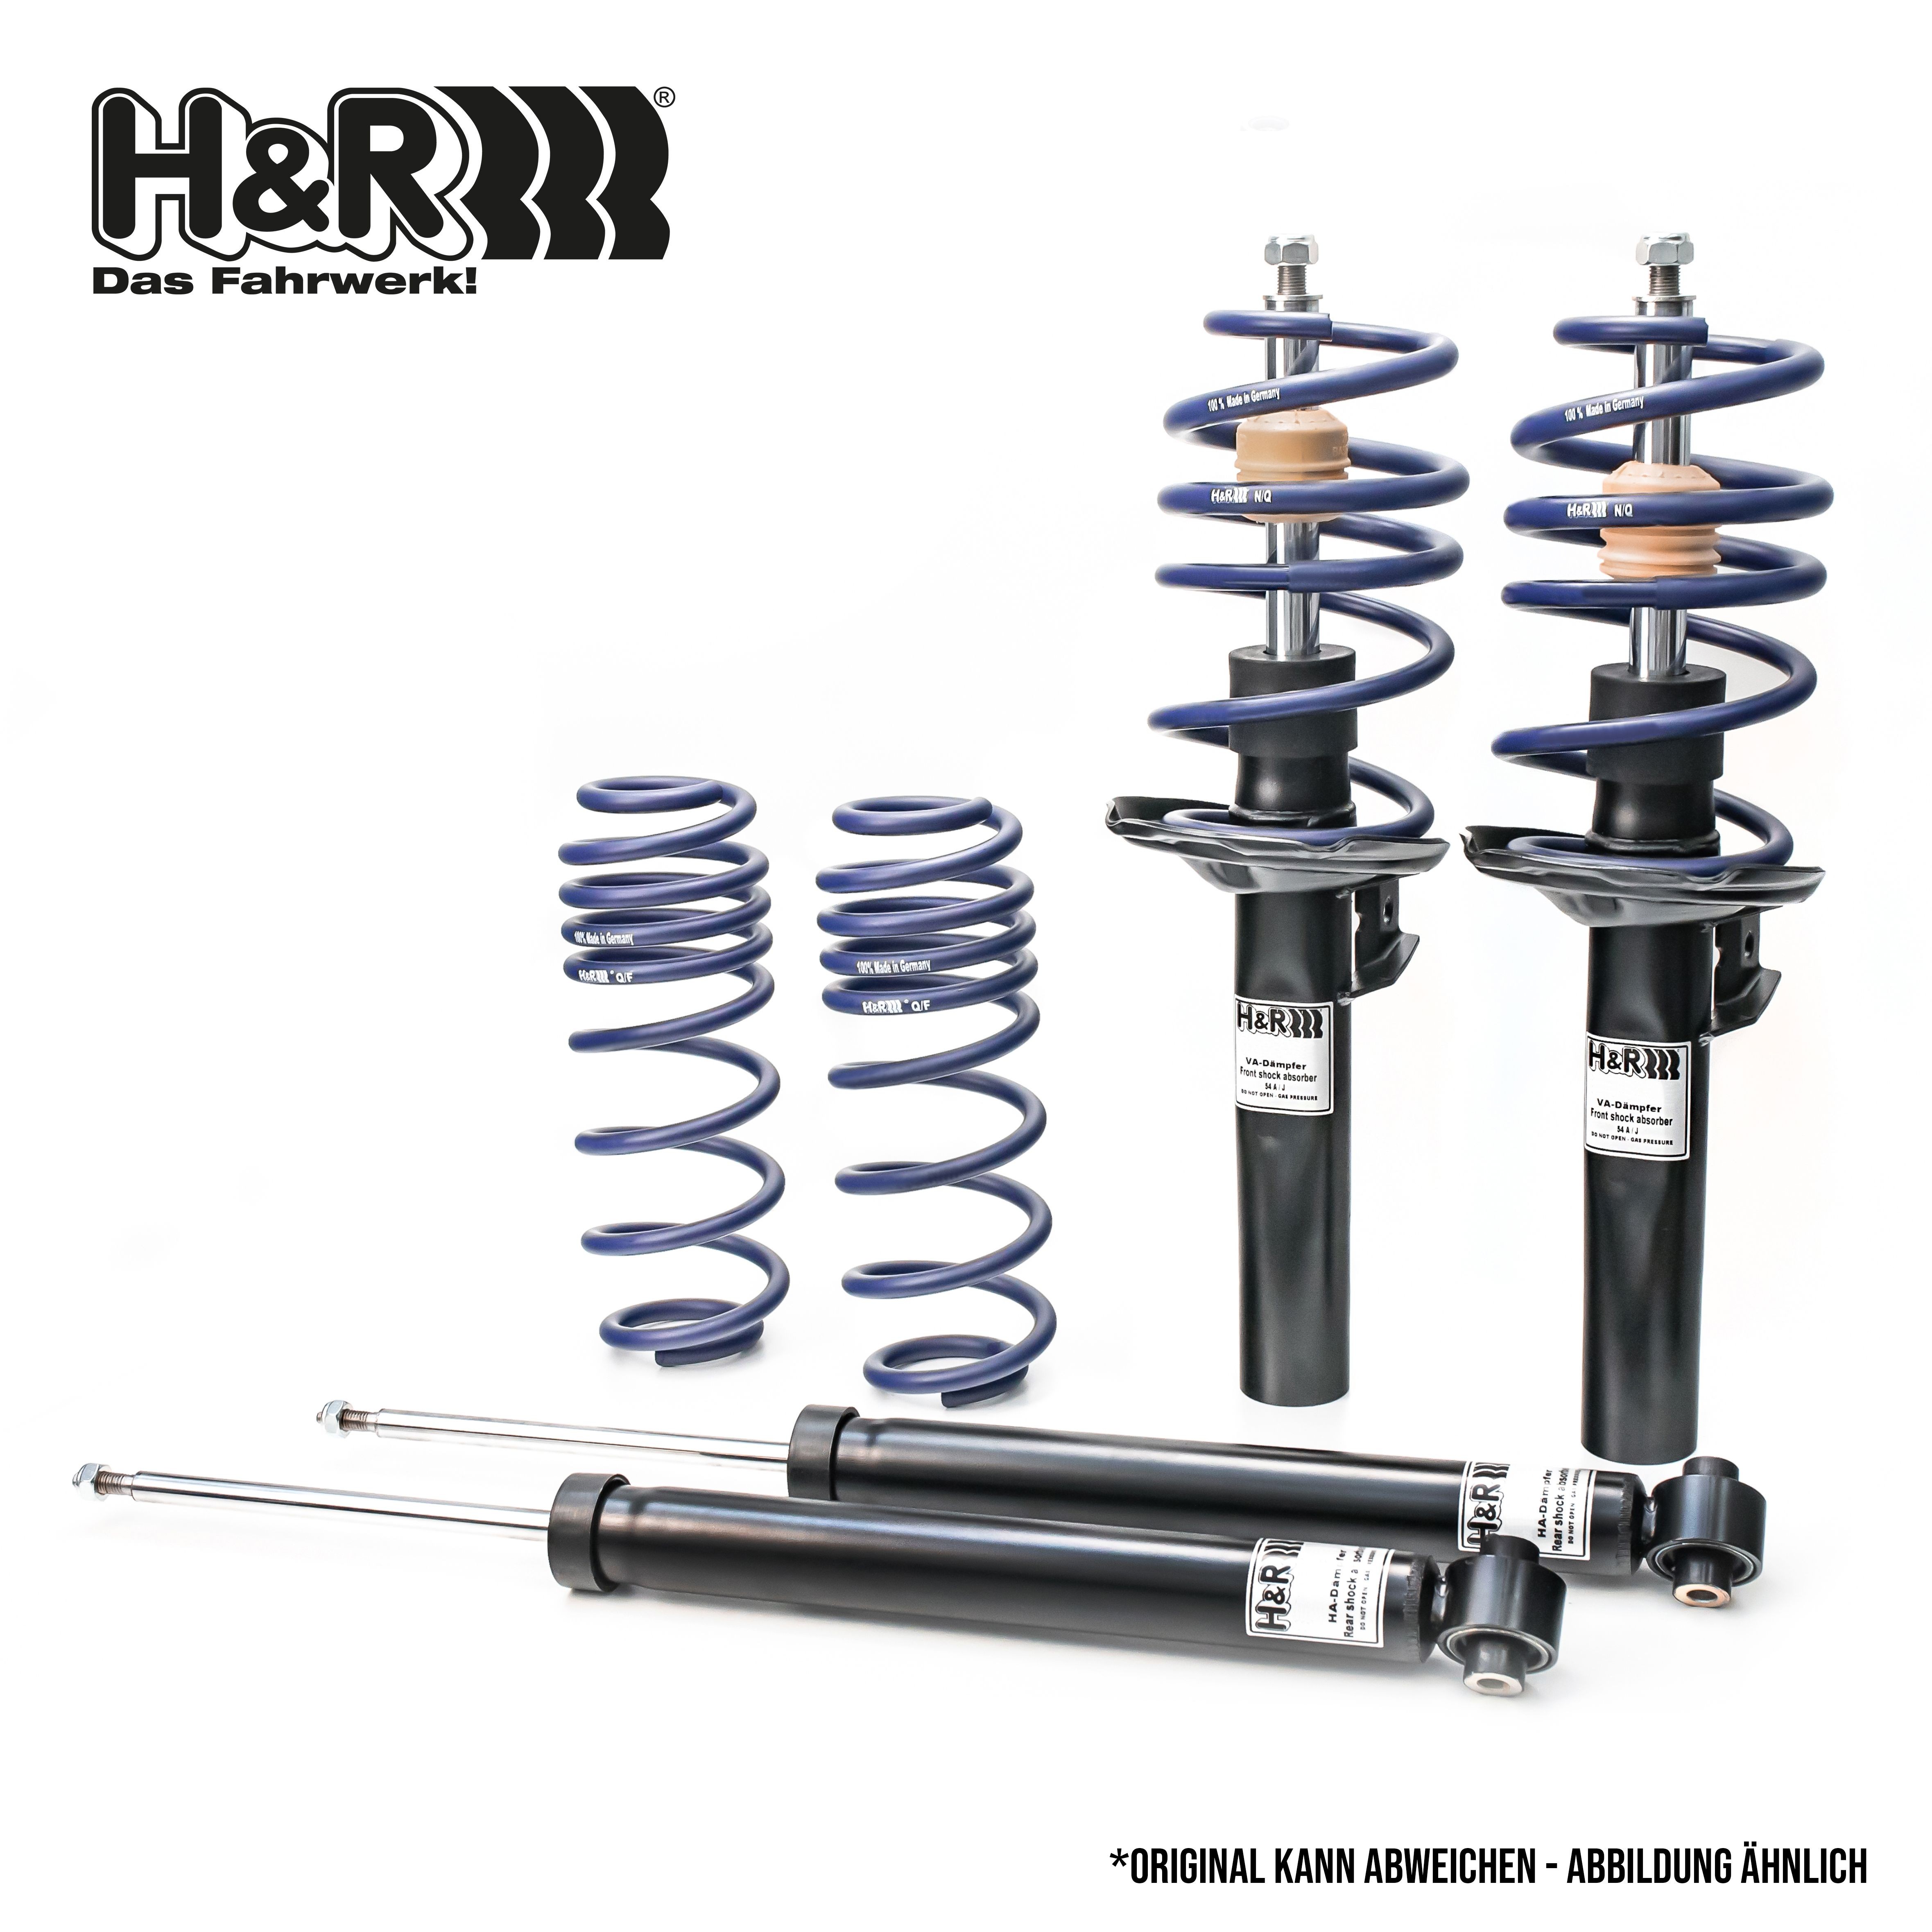 H&R Shock absorber set 40420-2 buy